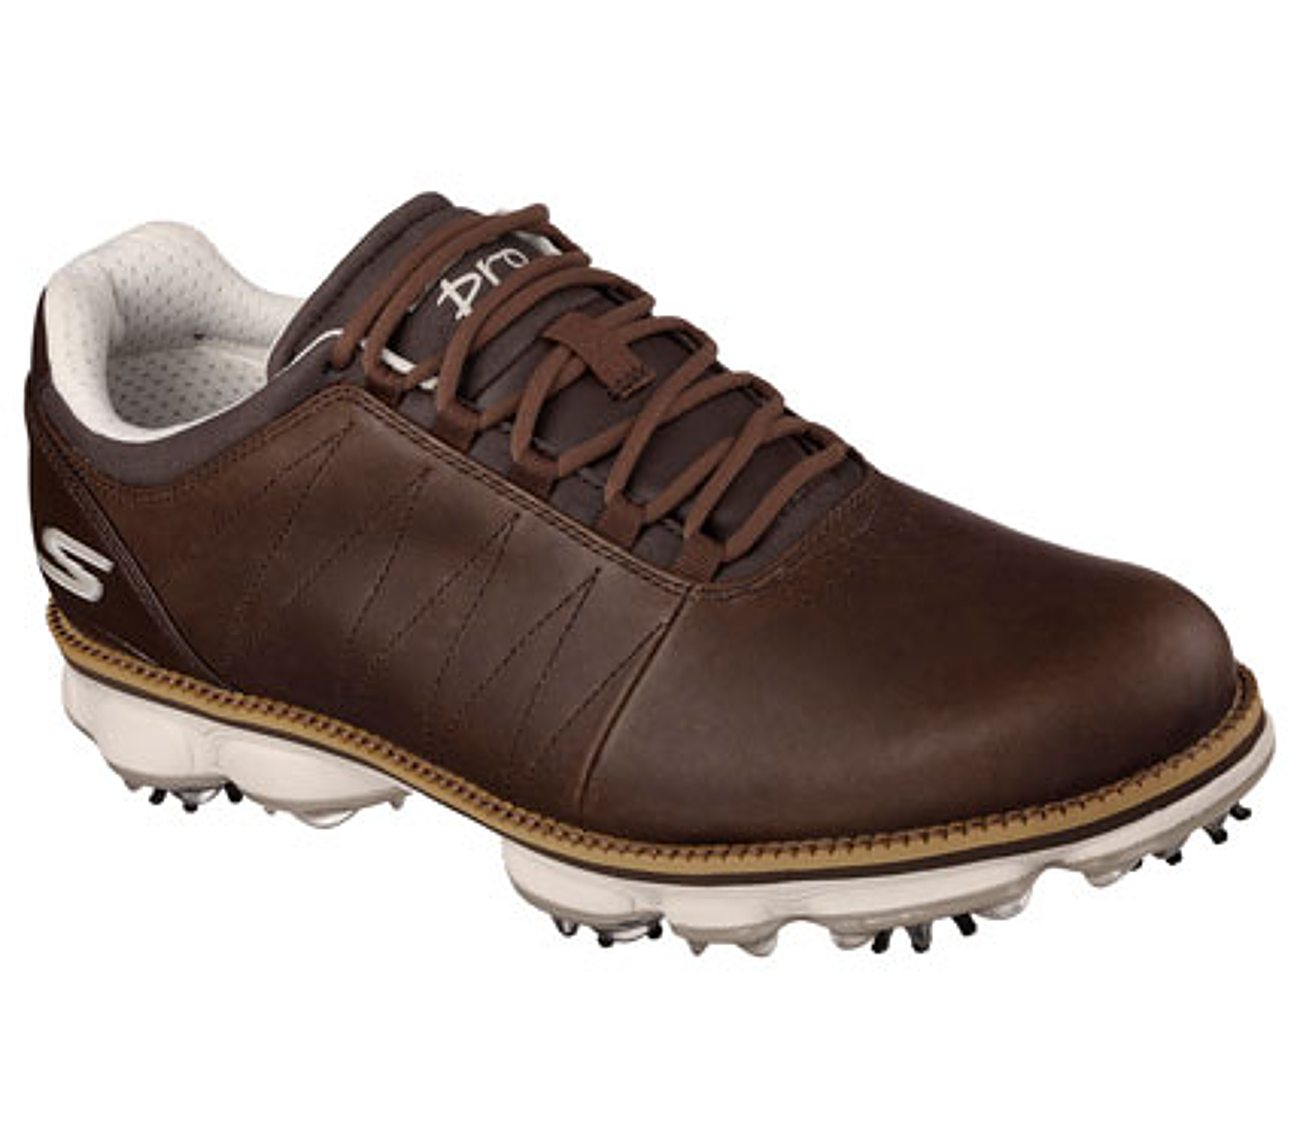 matt kuchar golf shoes Sale,up to 36 